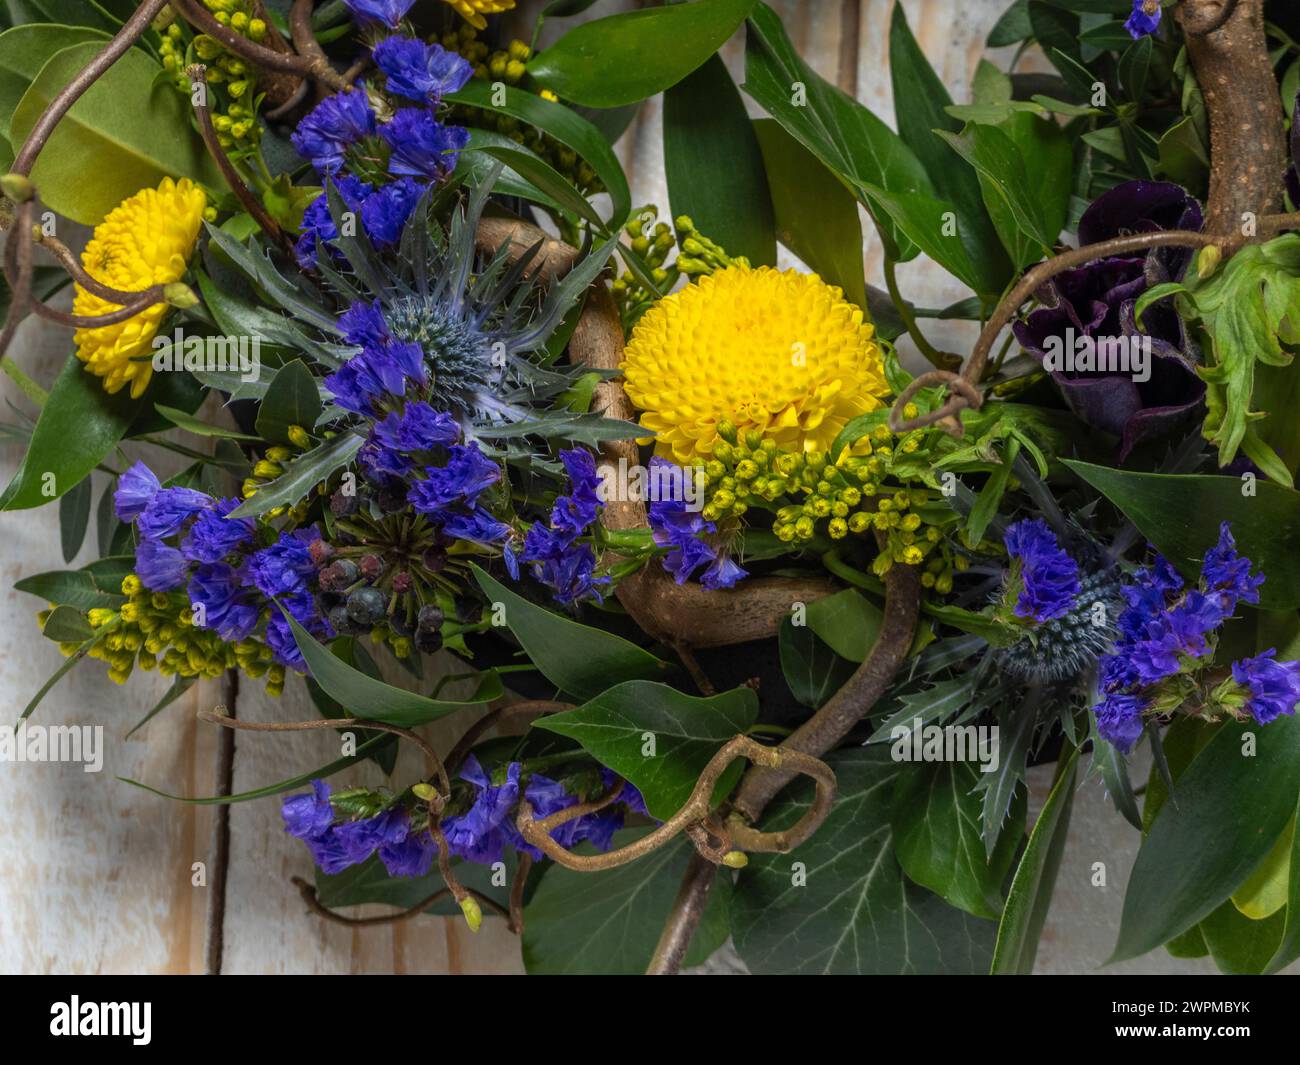 Gros plan d'une couronne printanière avec des fleurs violettes et jaunes et des brindilles torsadées de noisette, sur un fond rustique en bois blanchi à la chaux. Banque D'Images